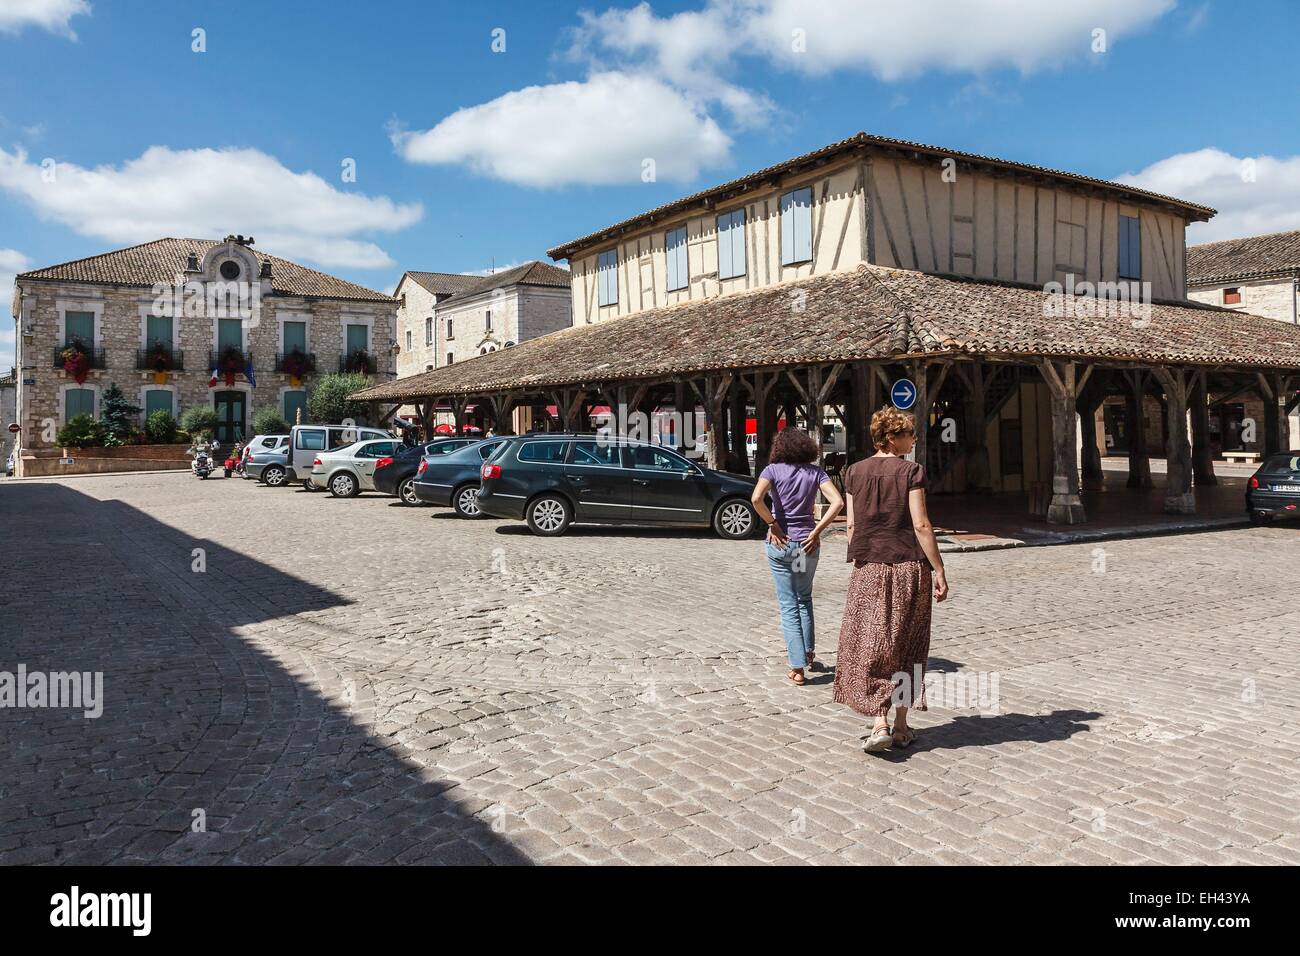 France, Lot et Garonne, Villereal, Guyenne ville fortifiée, le marché couvert et l'hôtel de ville Banque D'Images